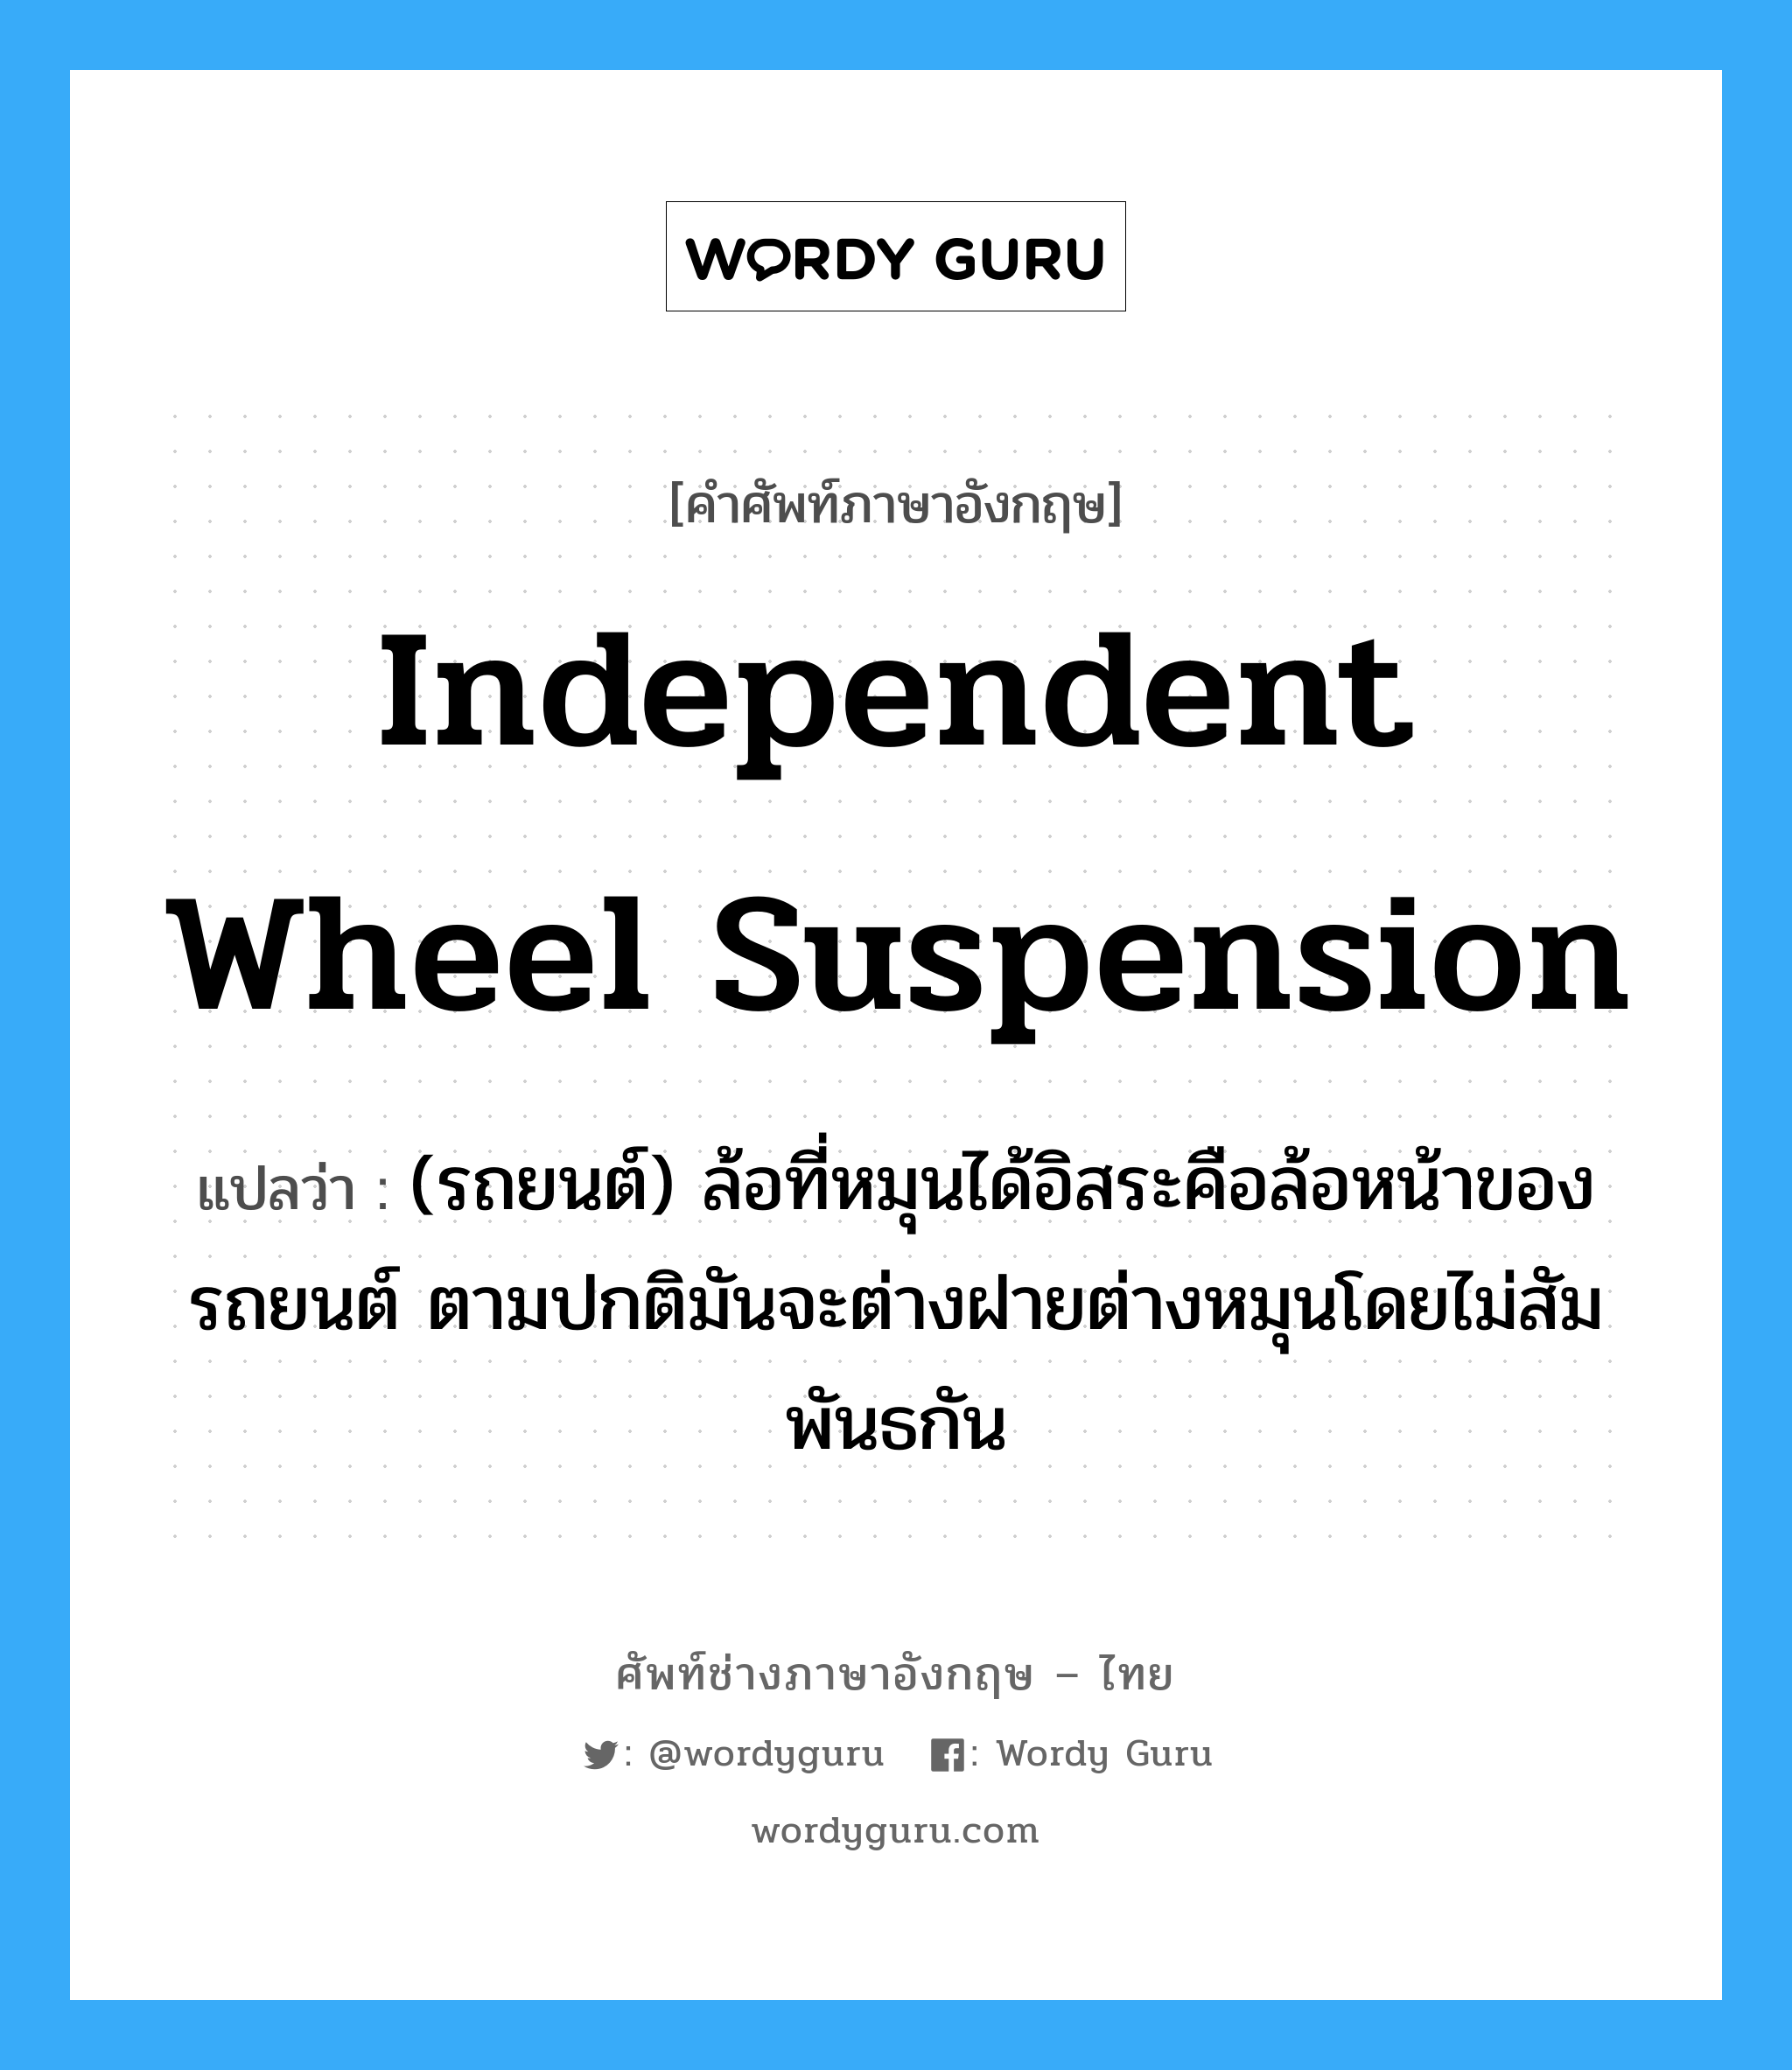 independent wheel suspension แปลว่า?, คำศัพท์ช่างภาษาอังกฤษ - ไทย independent wheel suspension คำศัพท์ภาษาอังกฤษ independent wheel suspension แปลว่า (รถยนต์) ล้อที่หมุนได้อิสระคือล้อหน้าของรถยนต์ ตามปกติมันจะต่างฝายต่างหมุนโดยไม่สัมพันธกัน